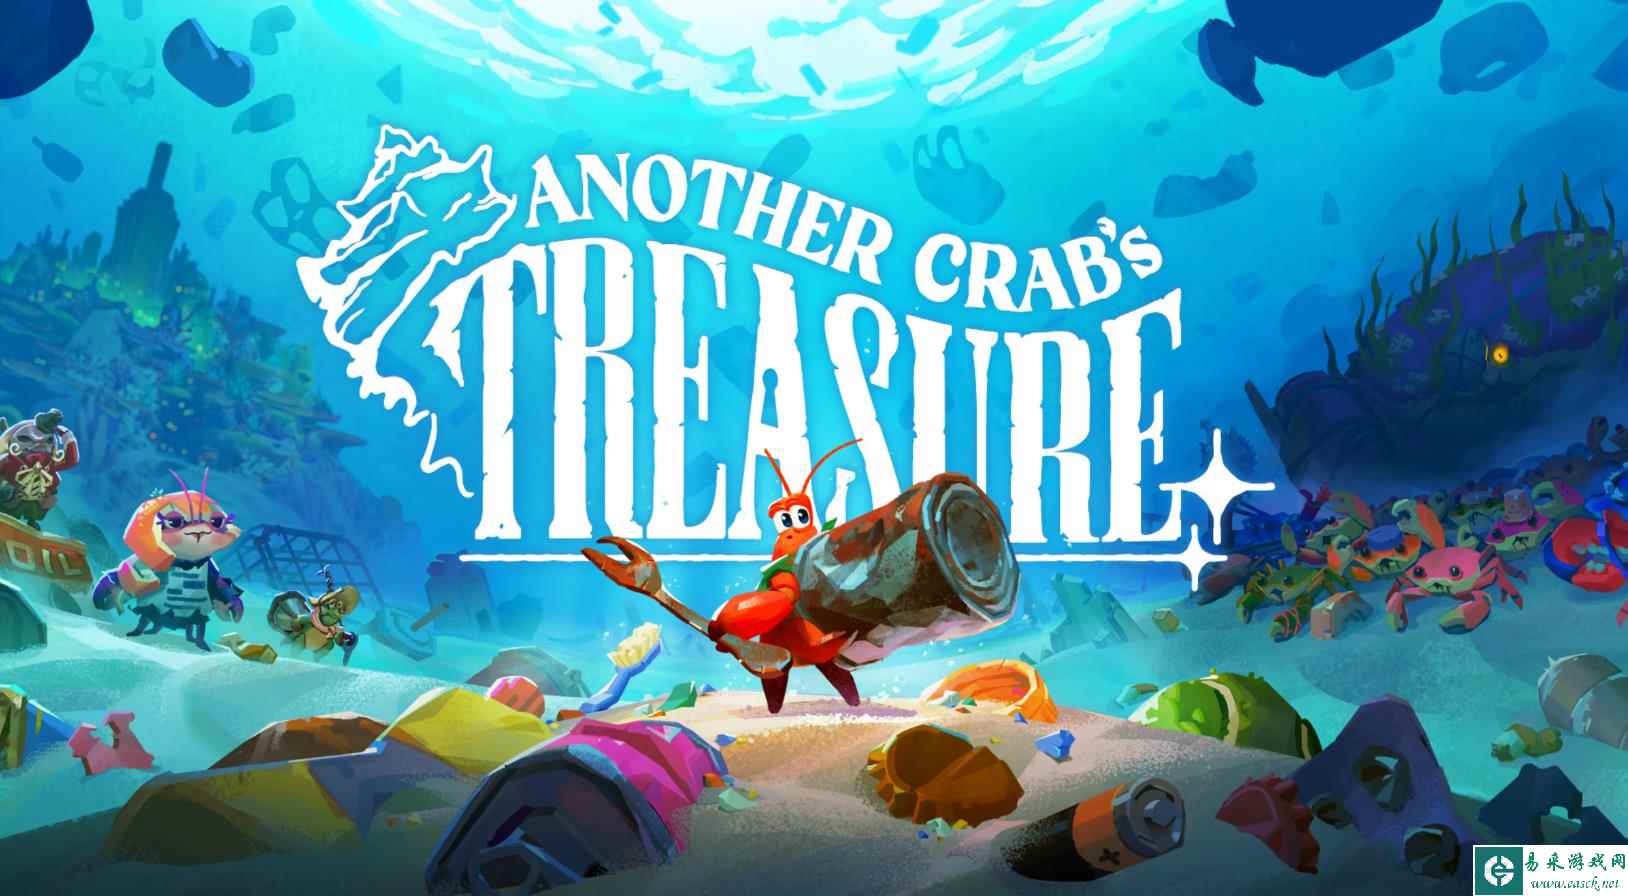 《蟹蟹寻宝奇遇》的开发商 Aggro Crab 宣布全平台销量已突破15万份 后续将持续更新